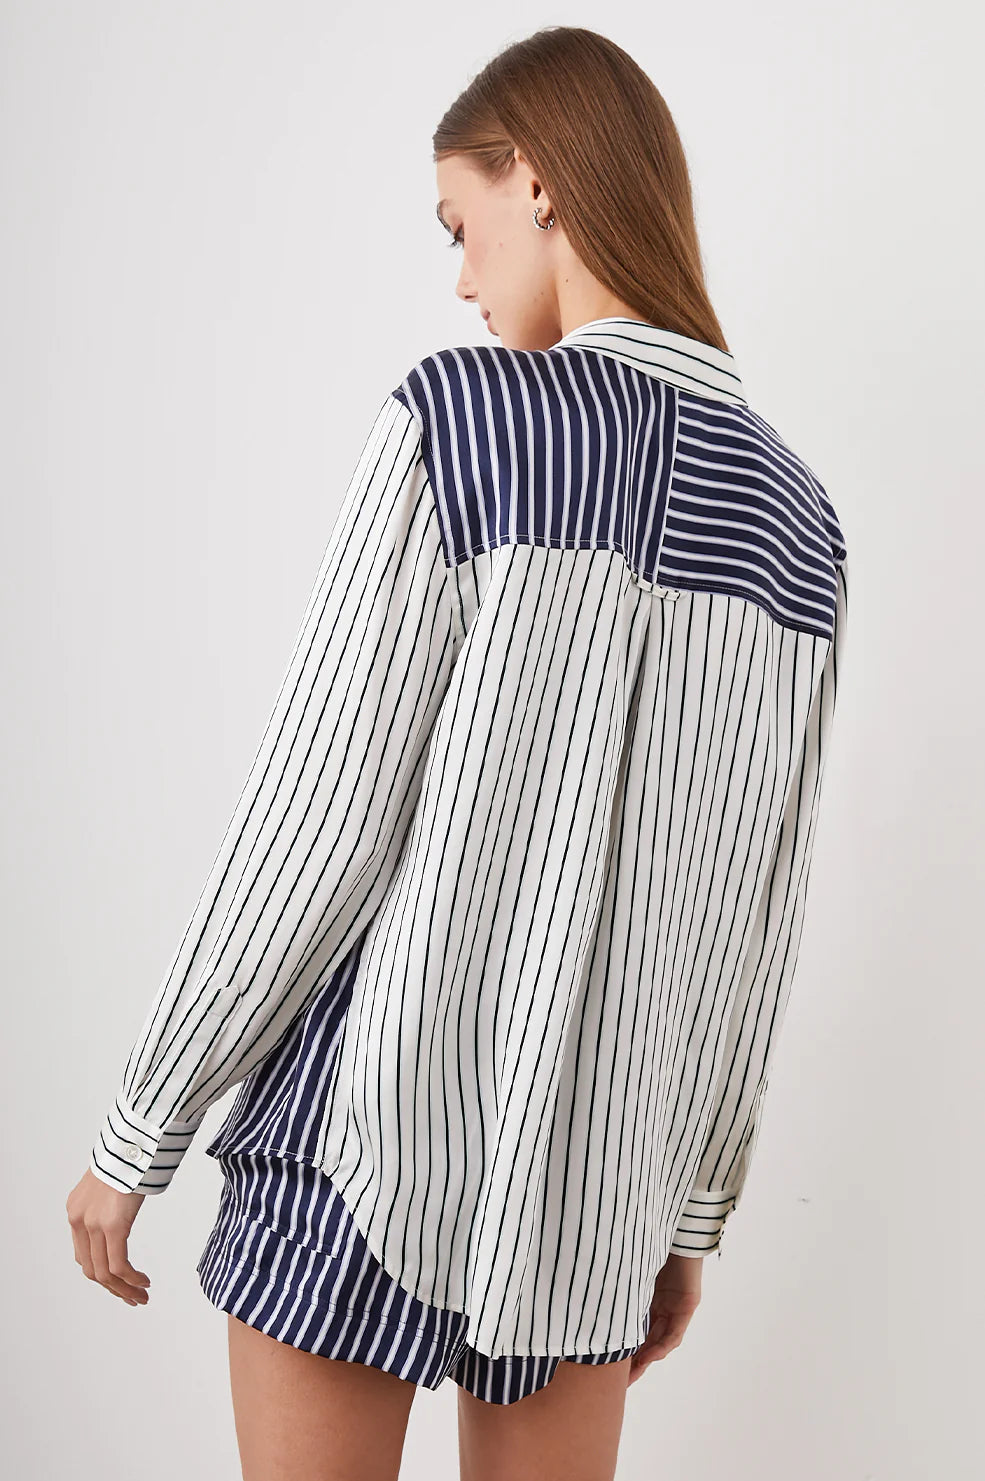 Spencer Shirt in Kent Multi Stripe